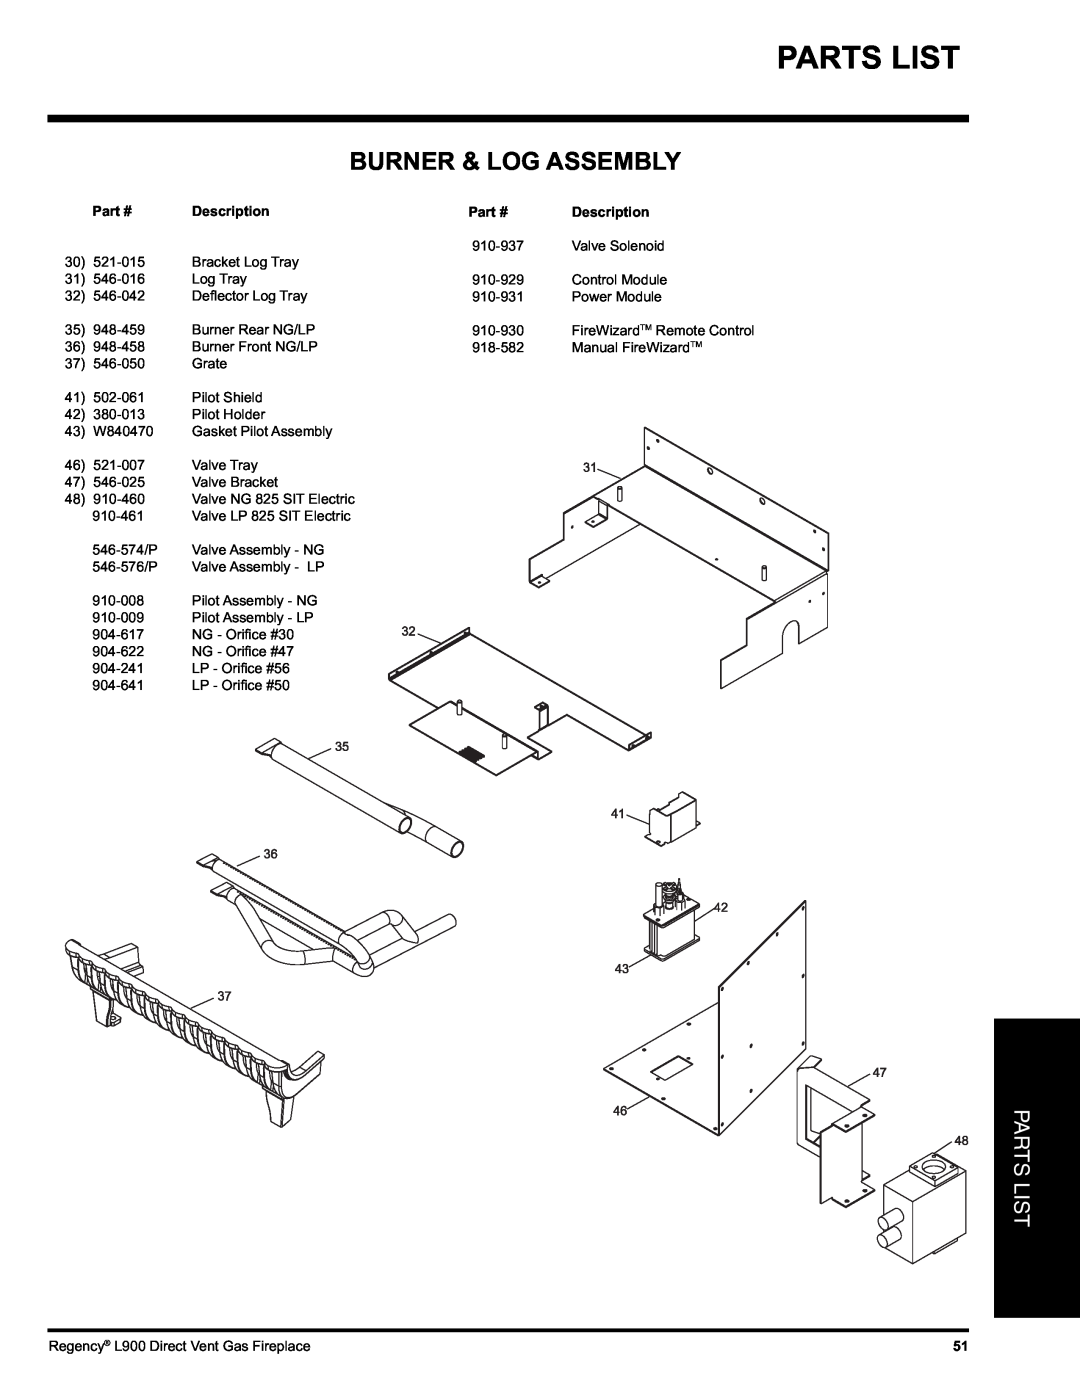 Regency L900-NG, L900-LP installation manual Parts List, Burner & Log Assembly, Description 